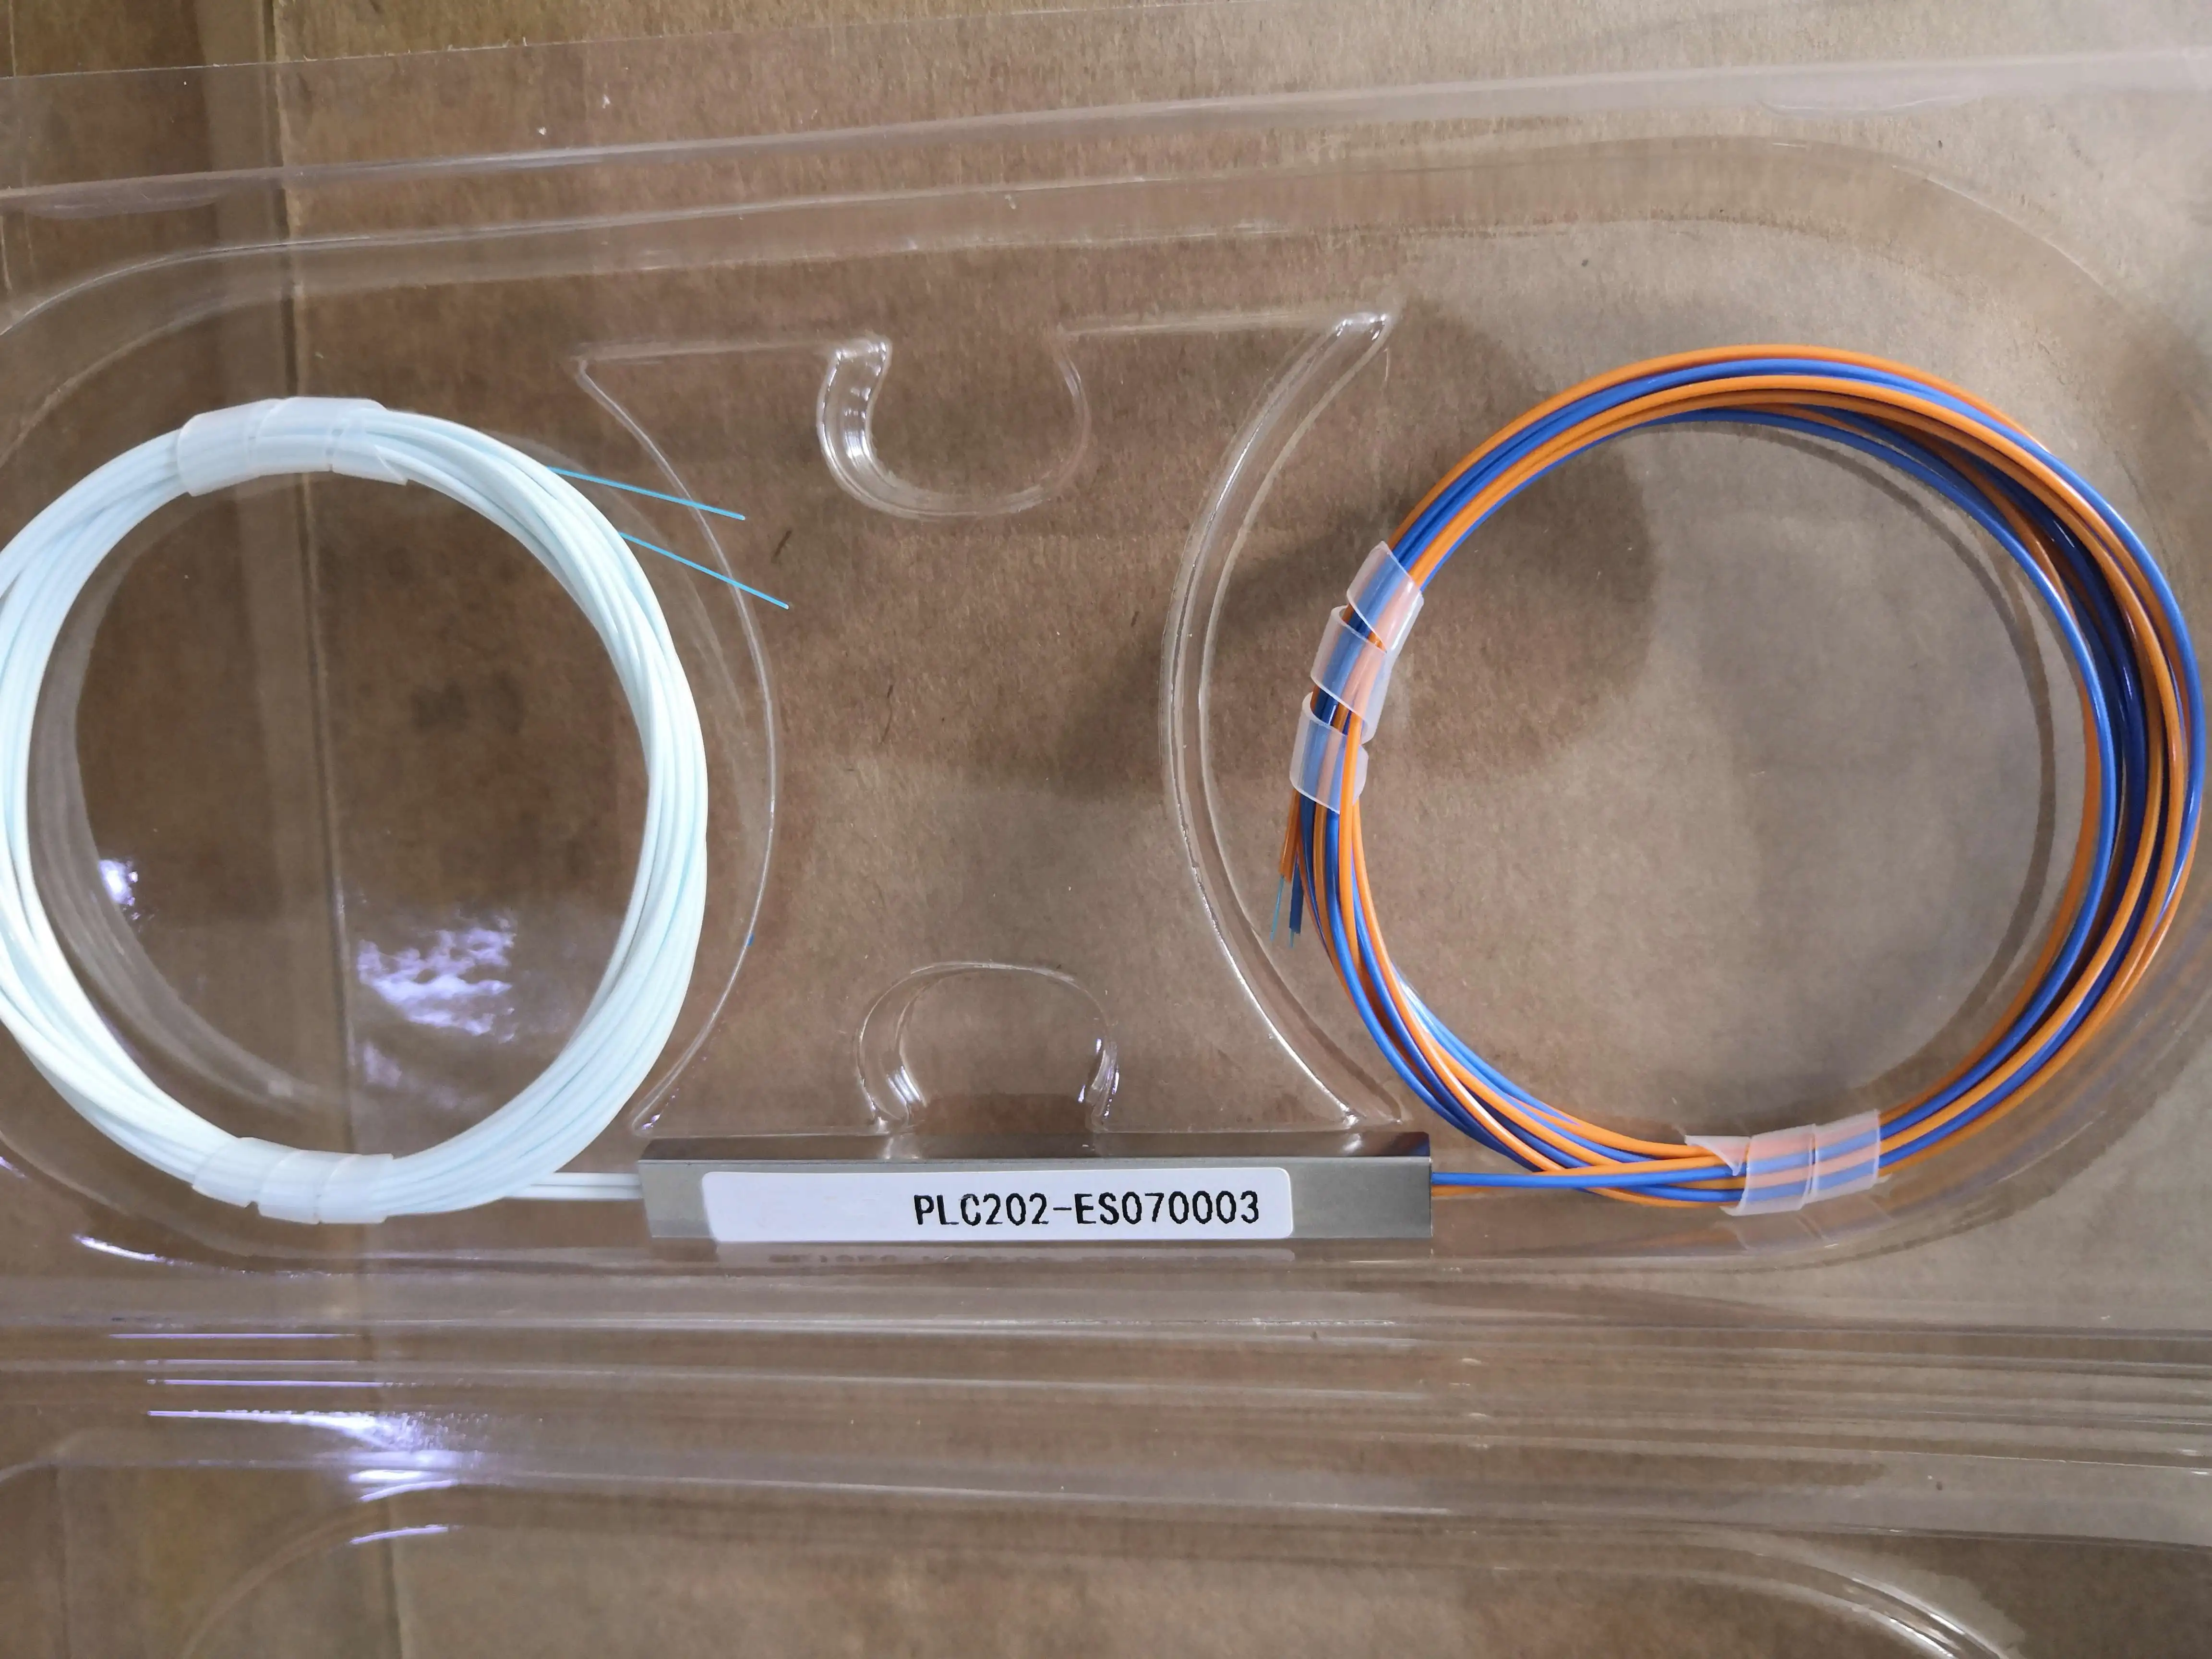 1*2 1*4 1*8 1*16 1*32 micro mini fiber optic PLC splitter